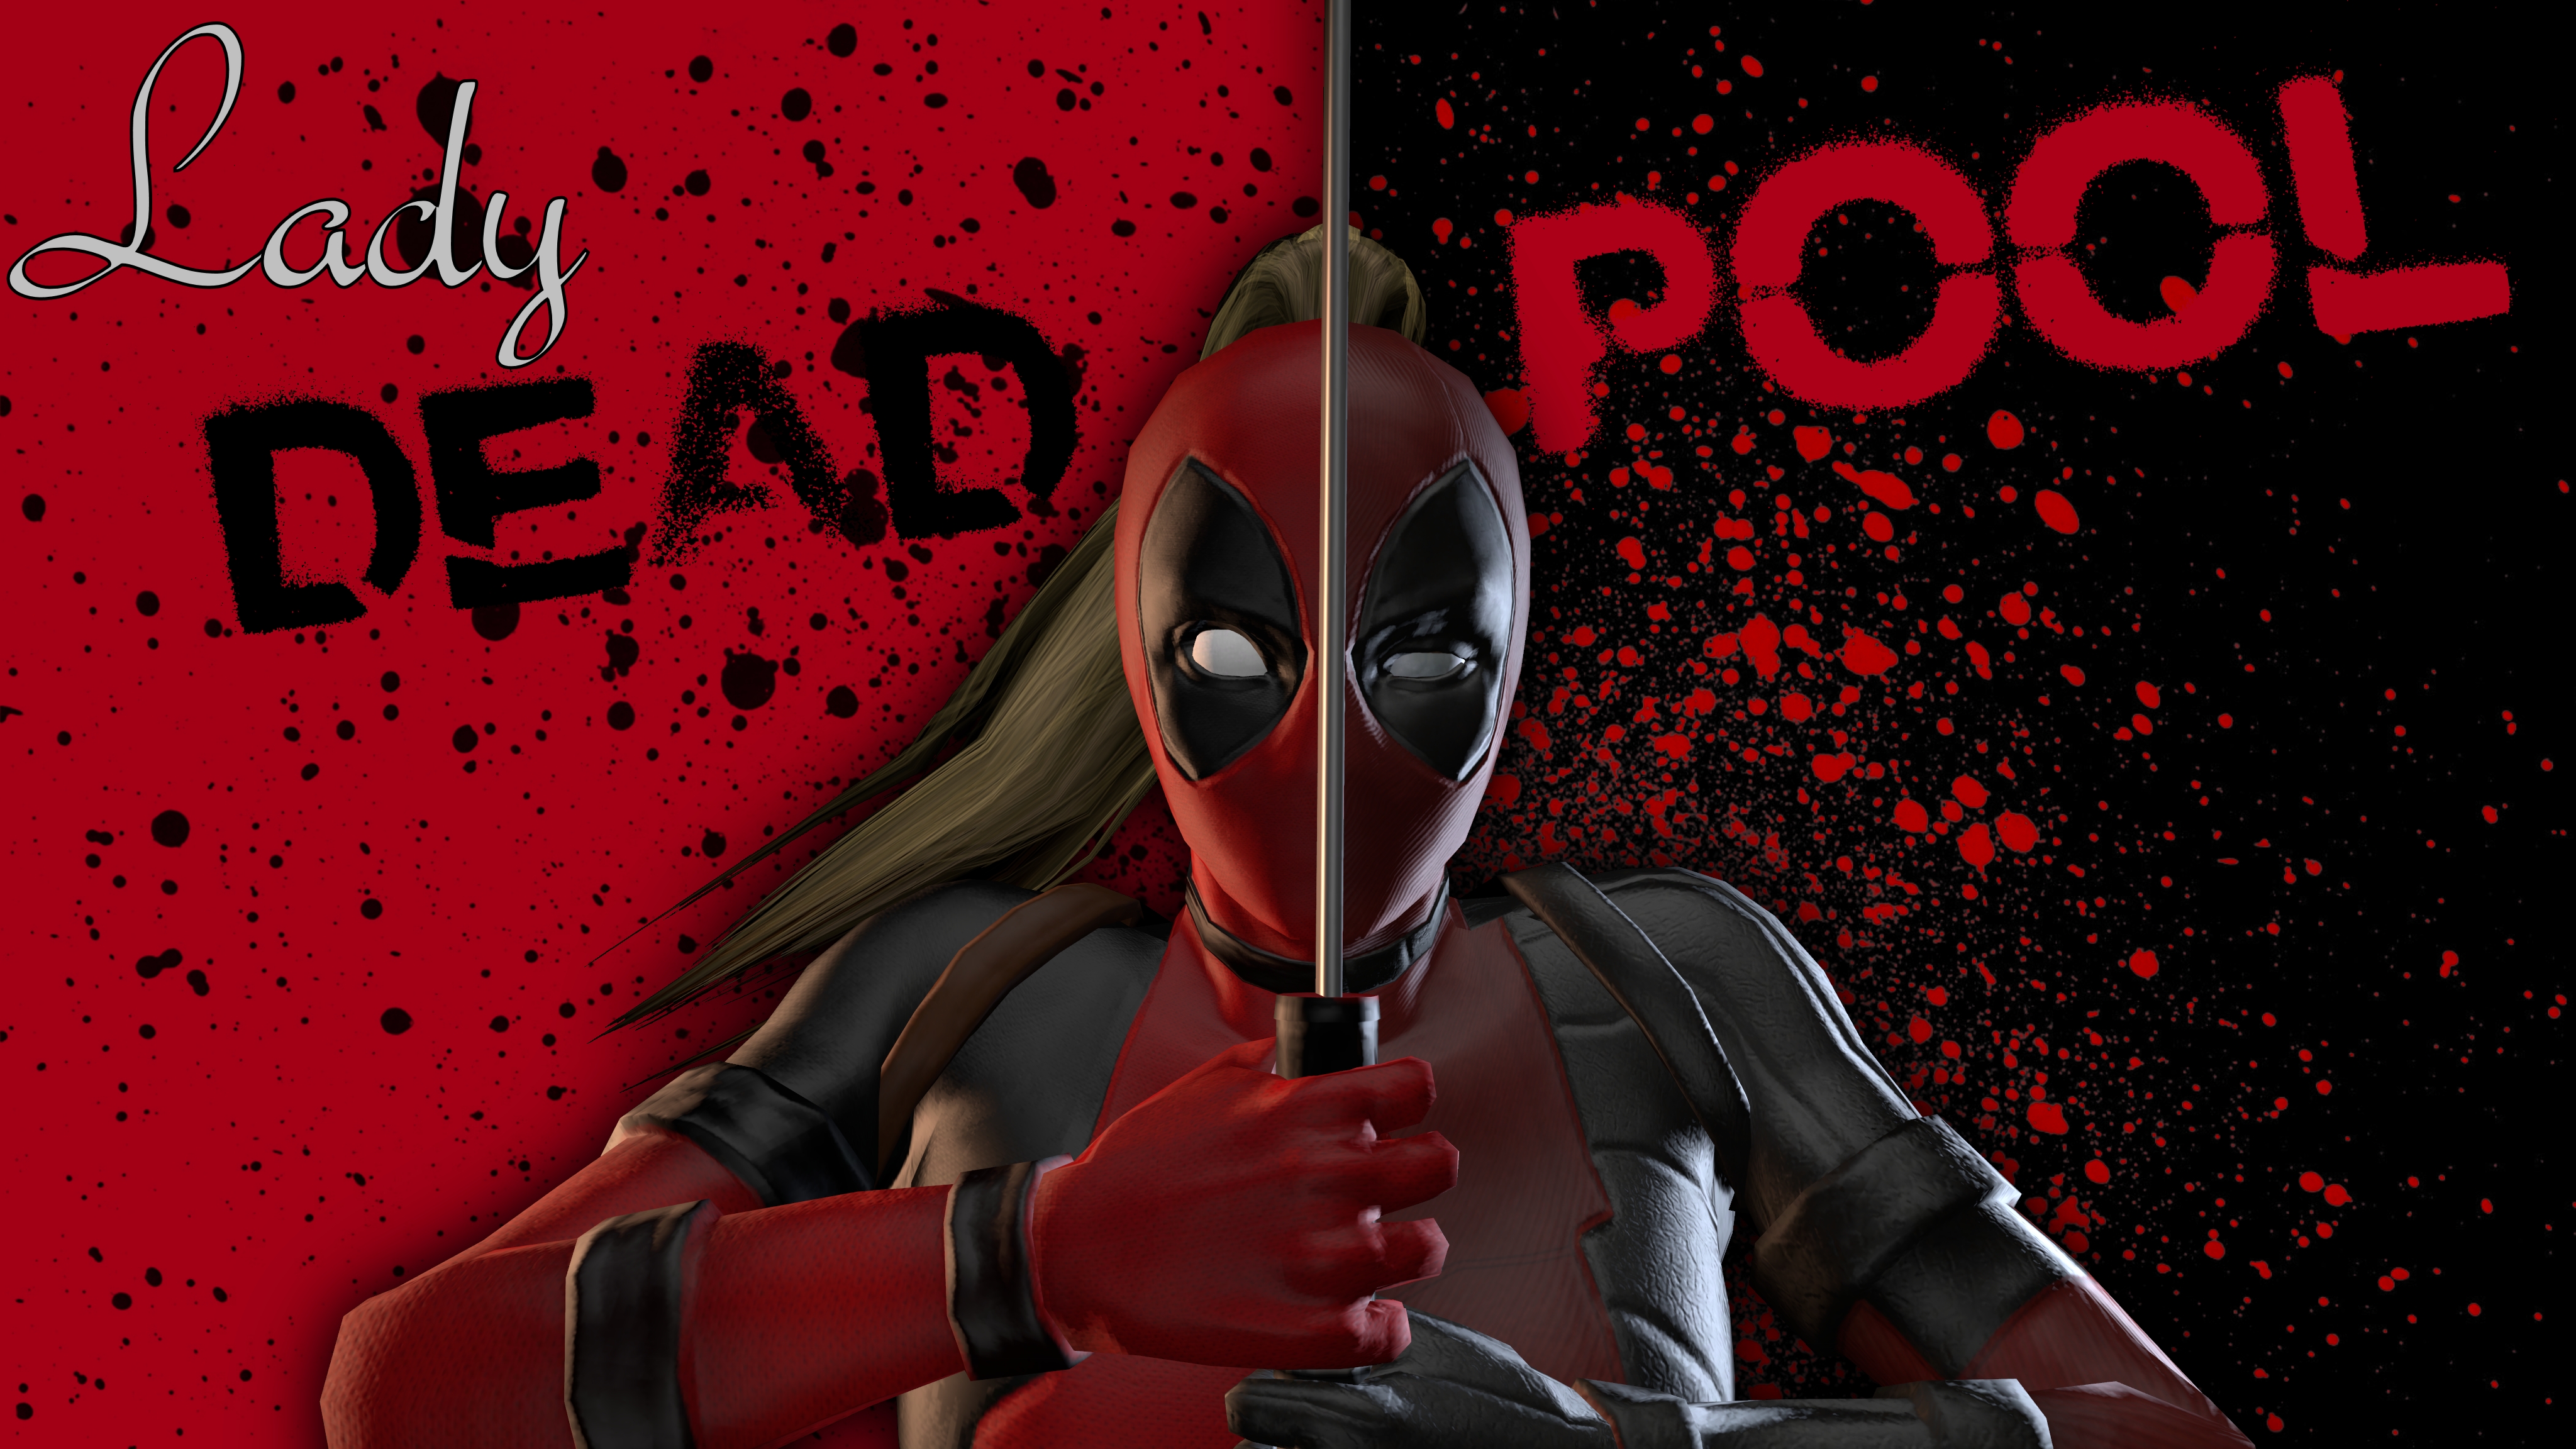 Lady Deadpool 4k Ultra HD Wallpaper | Background Image | 4096x2304